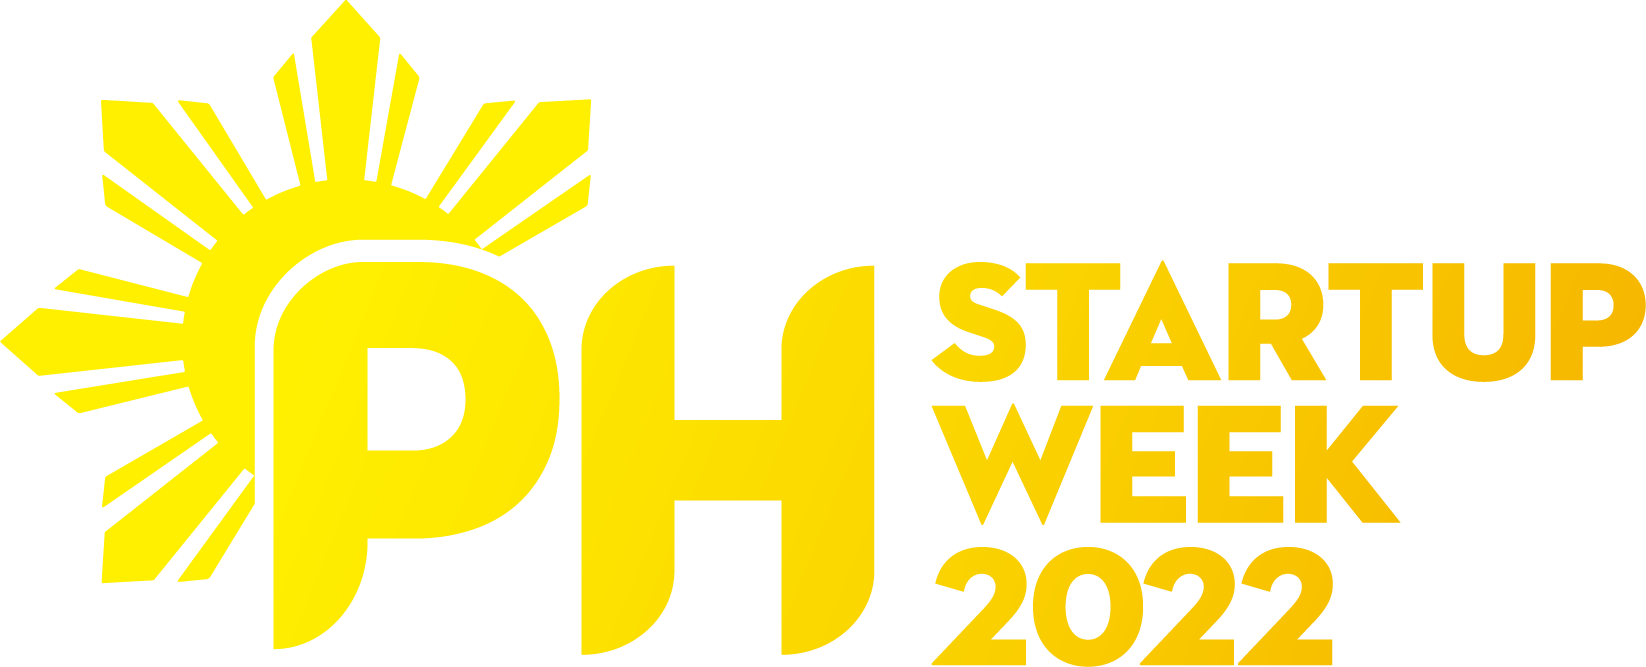 Philippine Startup Week 2022 Logo